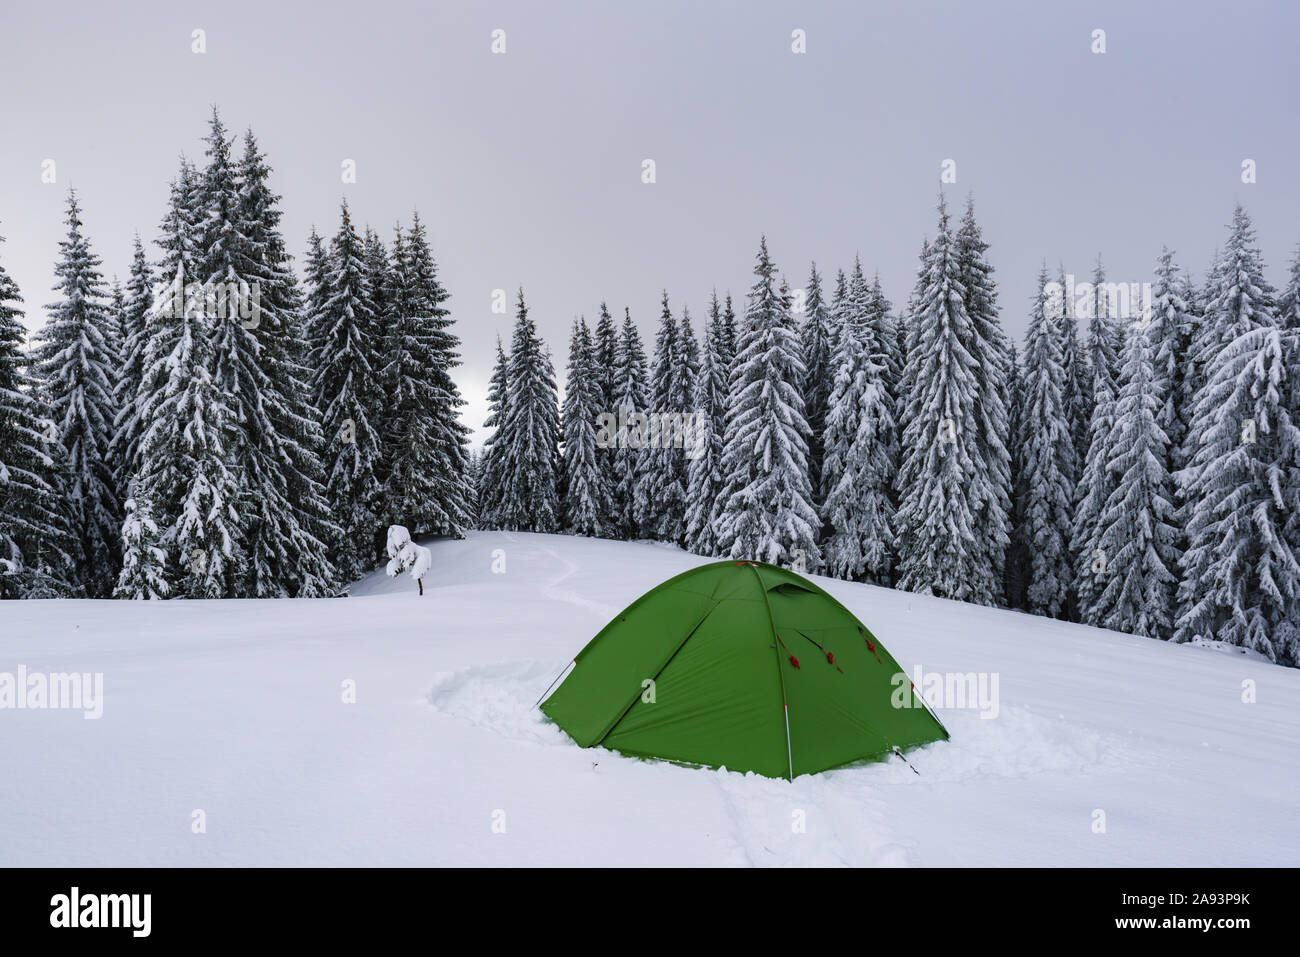 Tente verte sur fond de forêt de pins brumeux. Magnifique paysage de neige. Camp de touristes en hiver les montagnes. Concept de voyage Banque D'Images